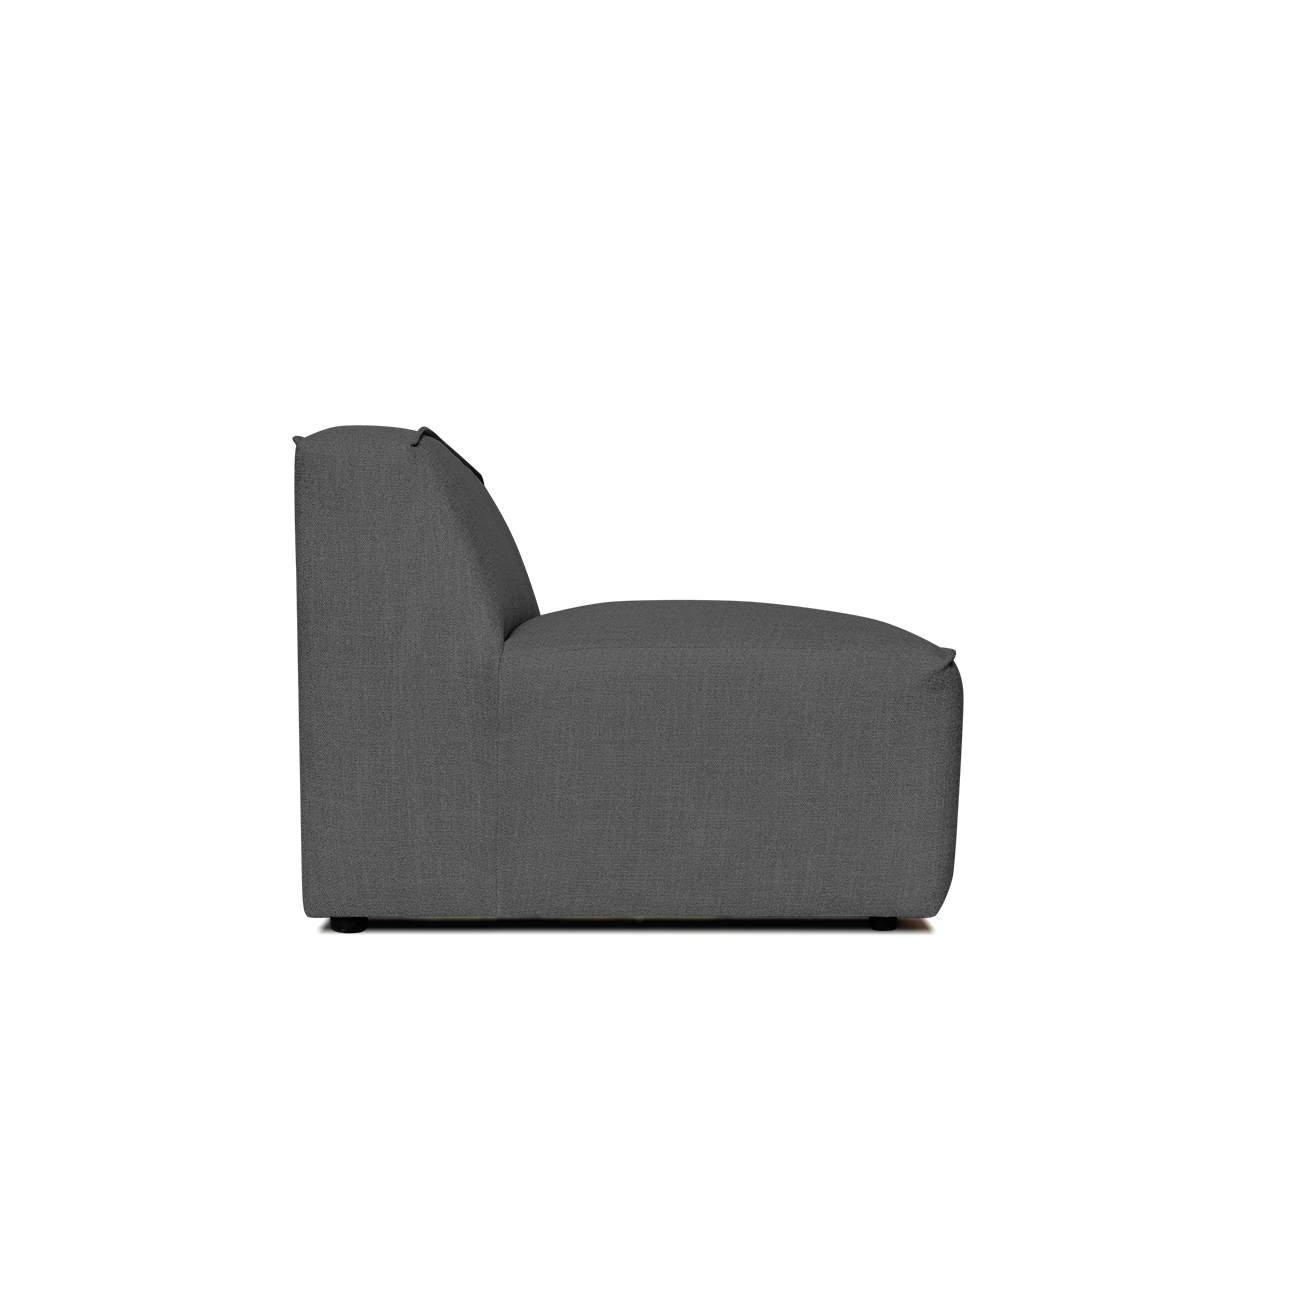 Zola 1 Seater - FibreGuard Graphite (Stock)